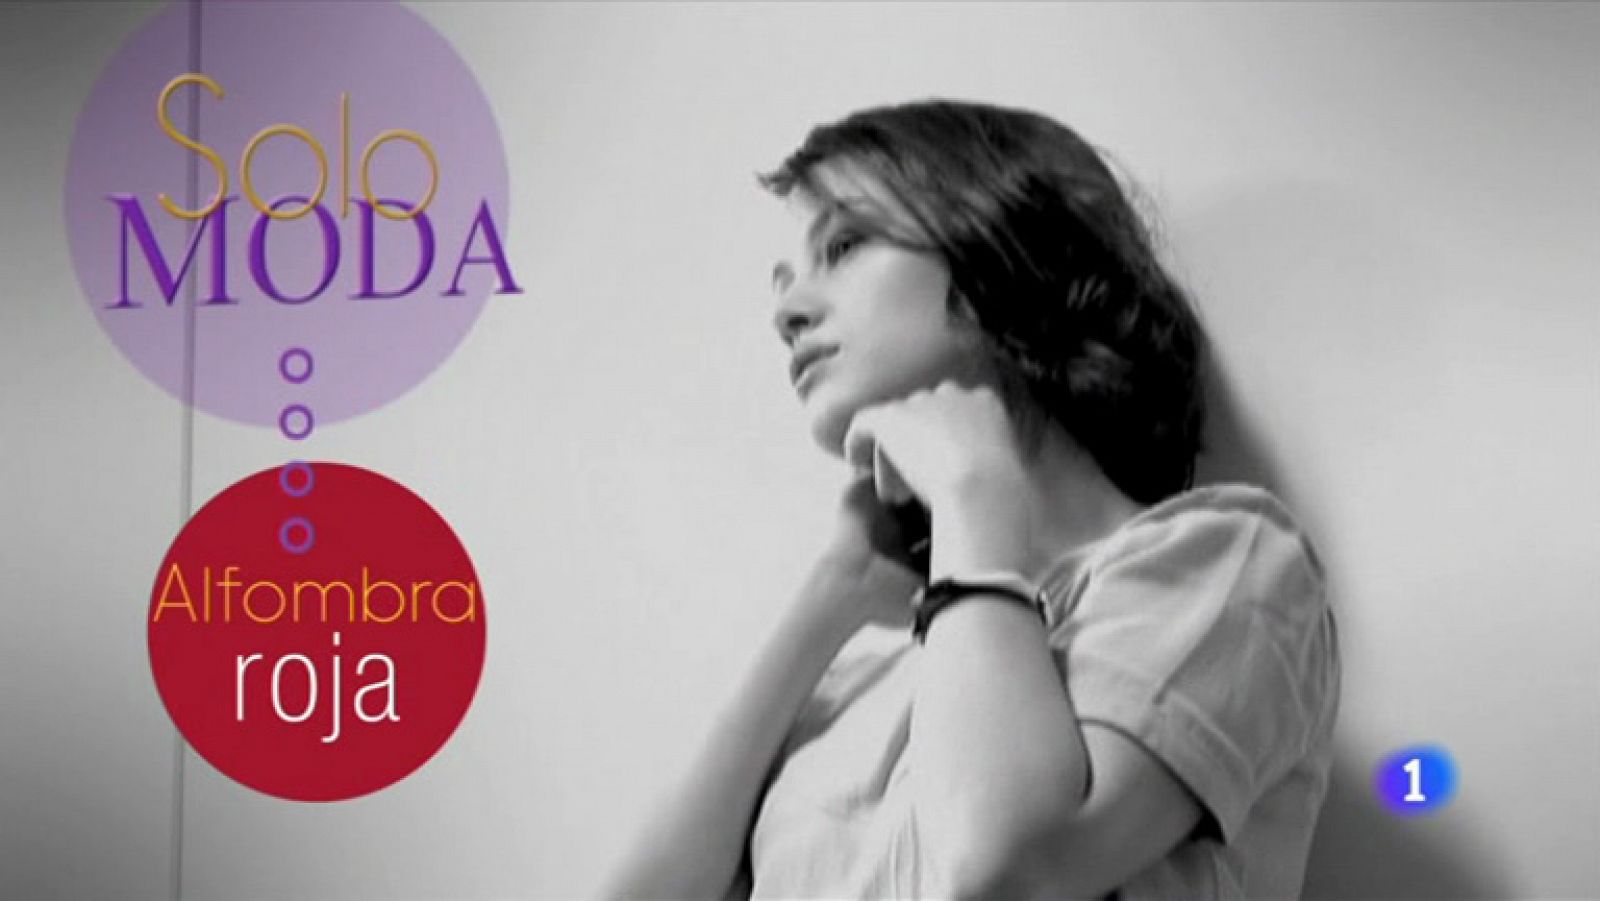 Flash moda: Solo Moda - Aida Folch | RTVE Play